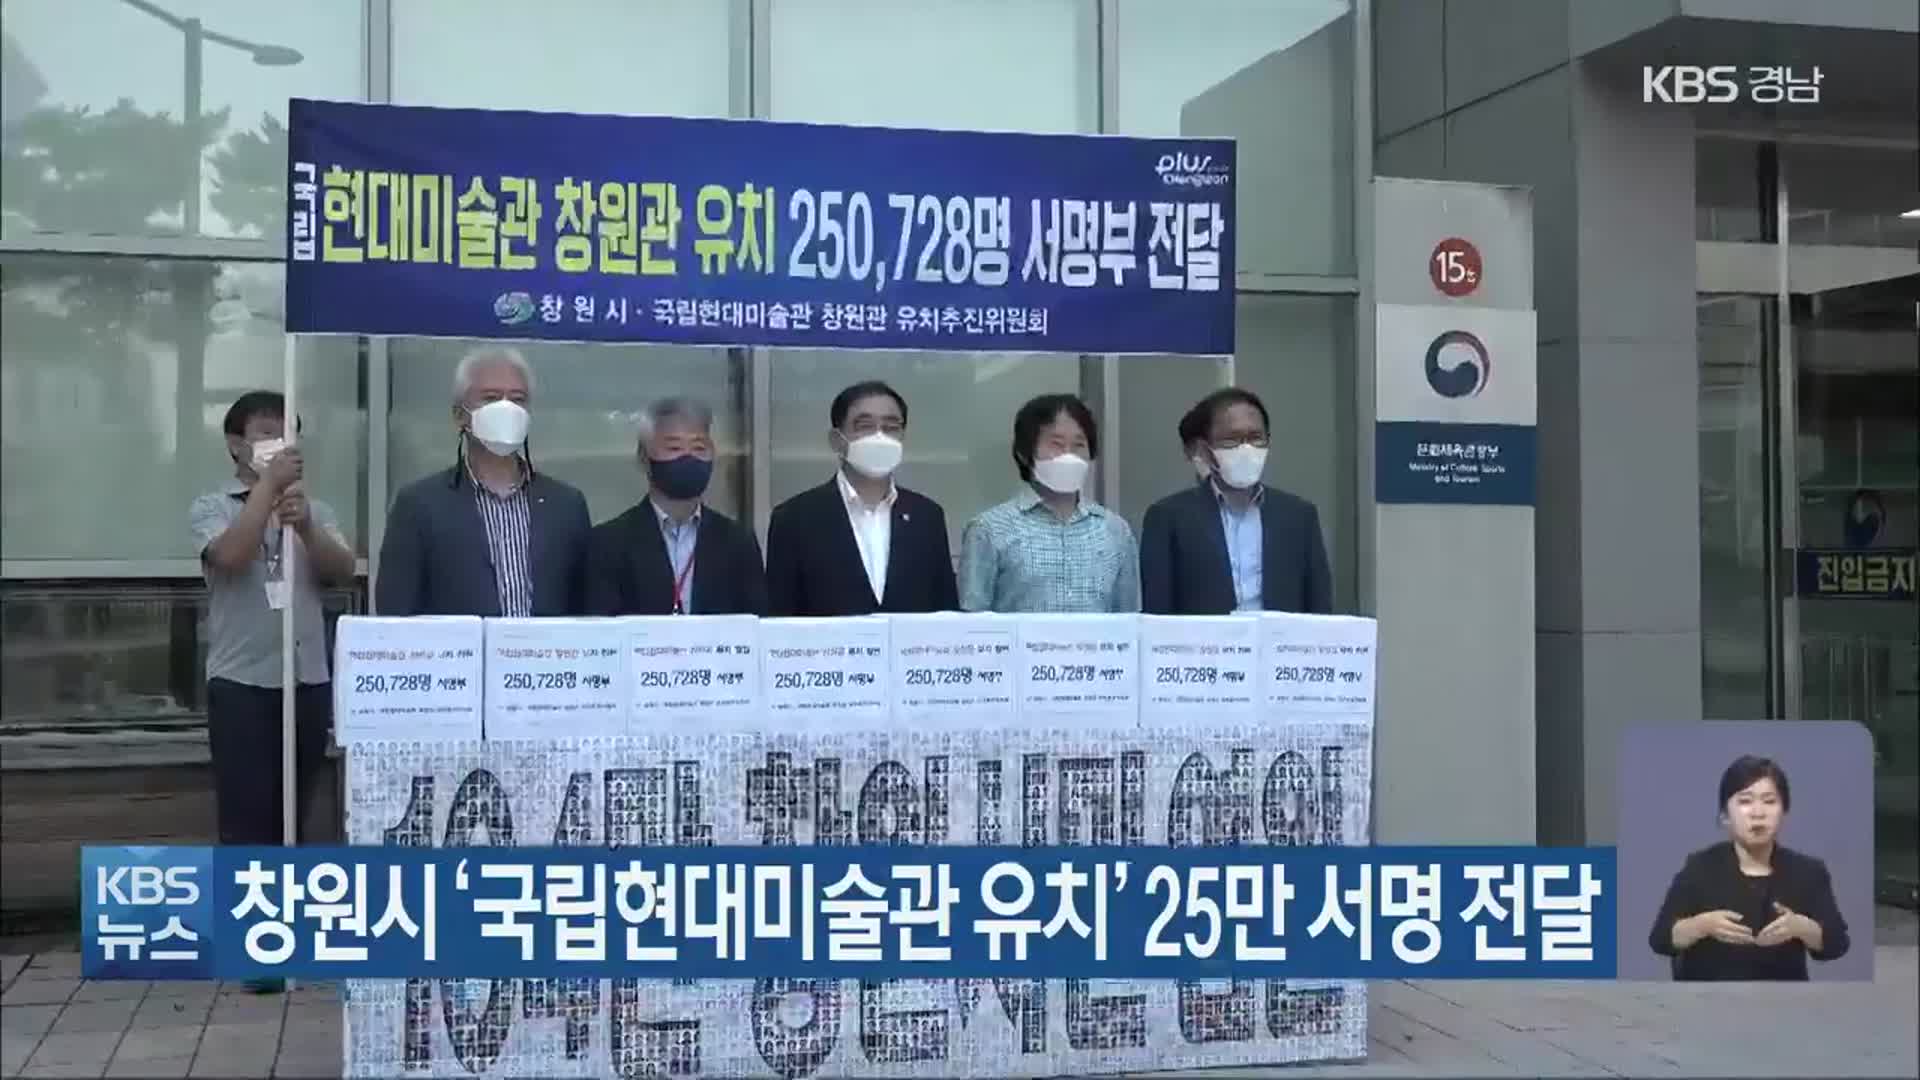 창원시 ‘국립현대미술관 유치’ 25만 서명 전달